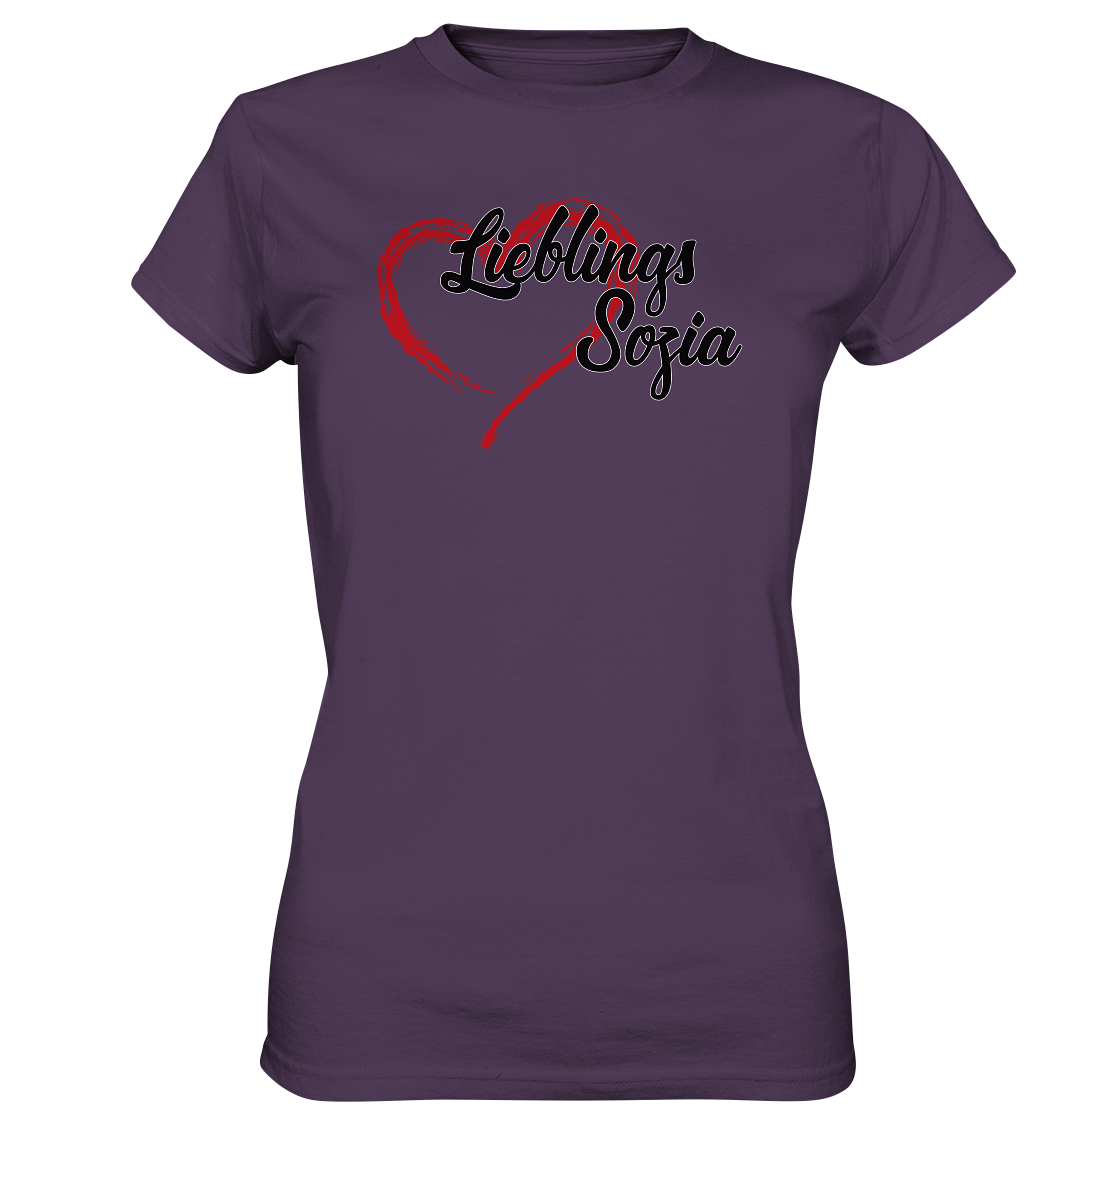 Stilisiertes Herz mit Pinselstrichen und Text "Lieblings Sozia"  - Ladies Premium Shirt